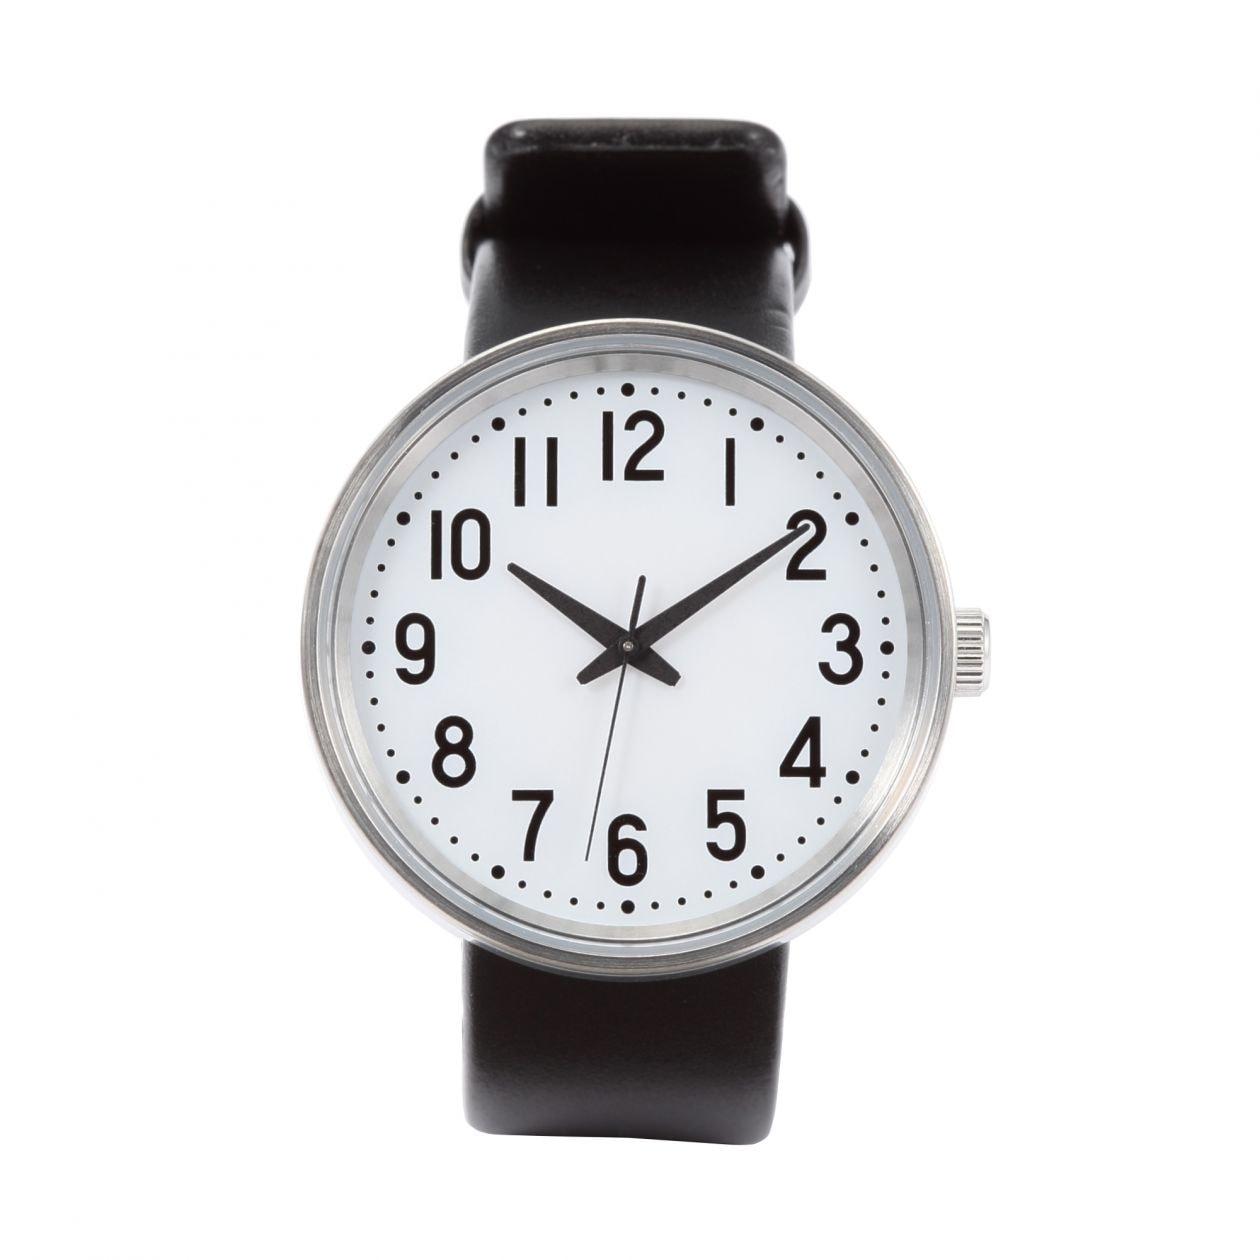 無印良品 公園の時計 自動巻時計 - 腕時計(アナログ)